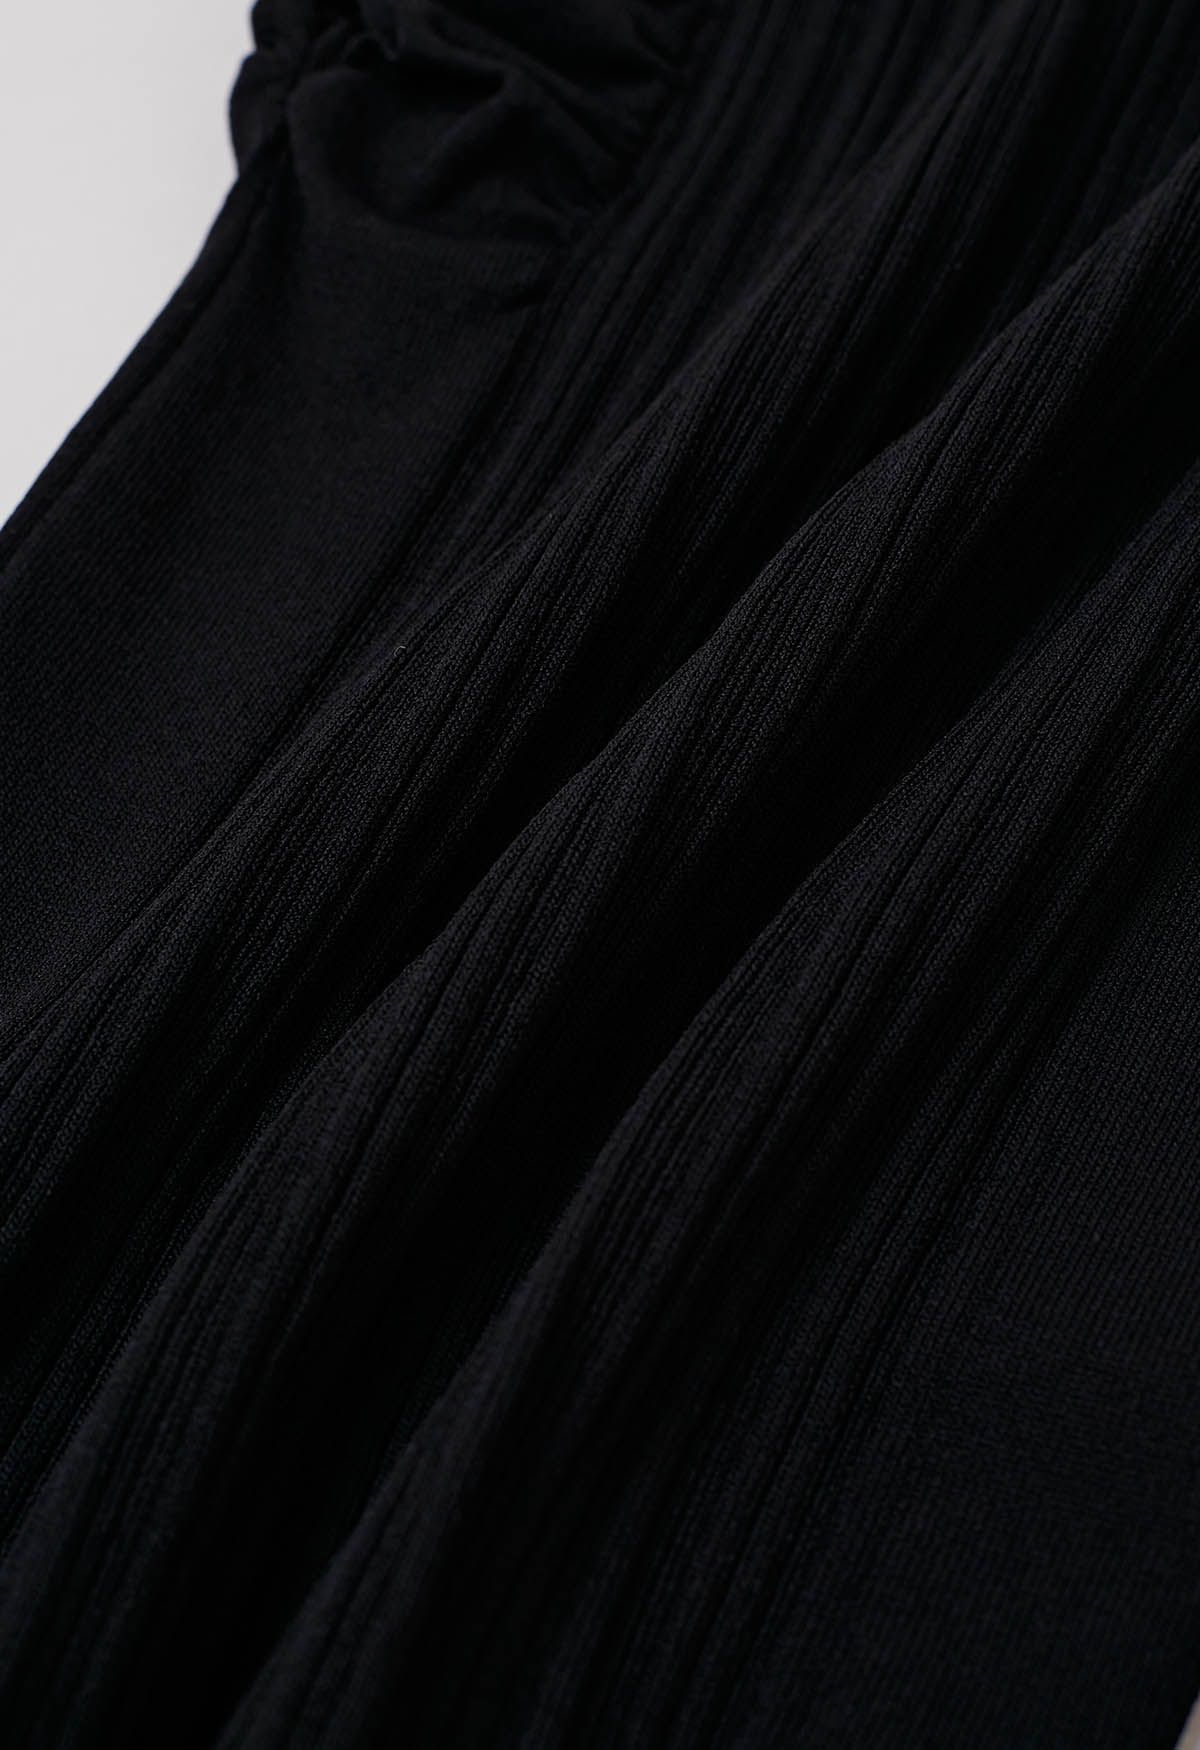 قلادة عنق Ruched كاب الأكمام متماسكة أعلى باللون الأسود